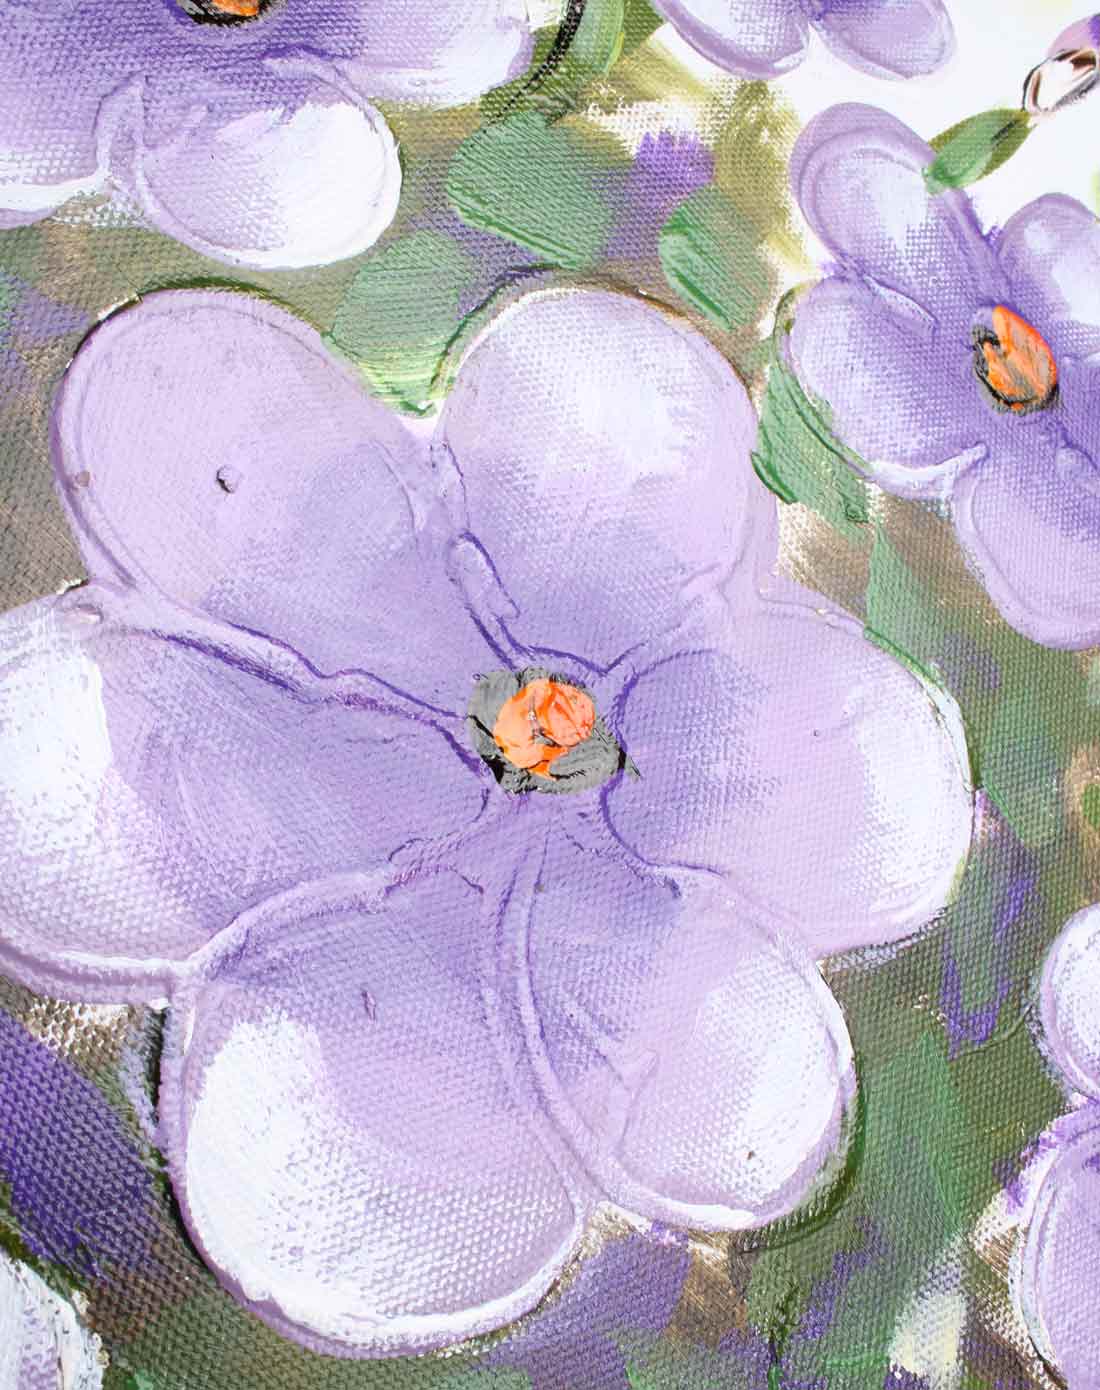 紫色花朵壁纸油画图片